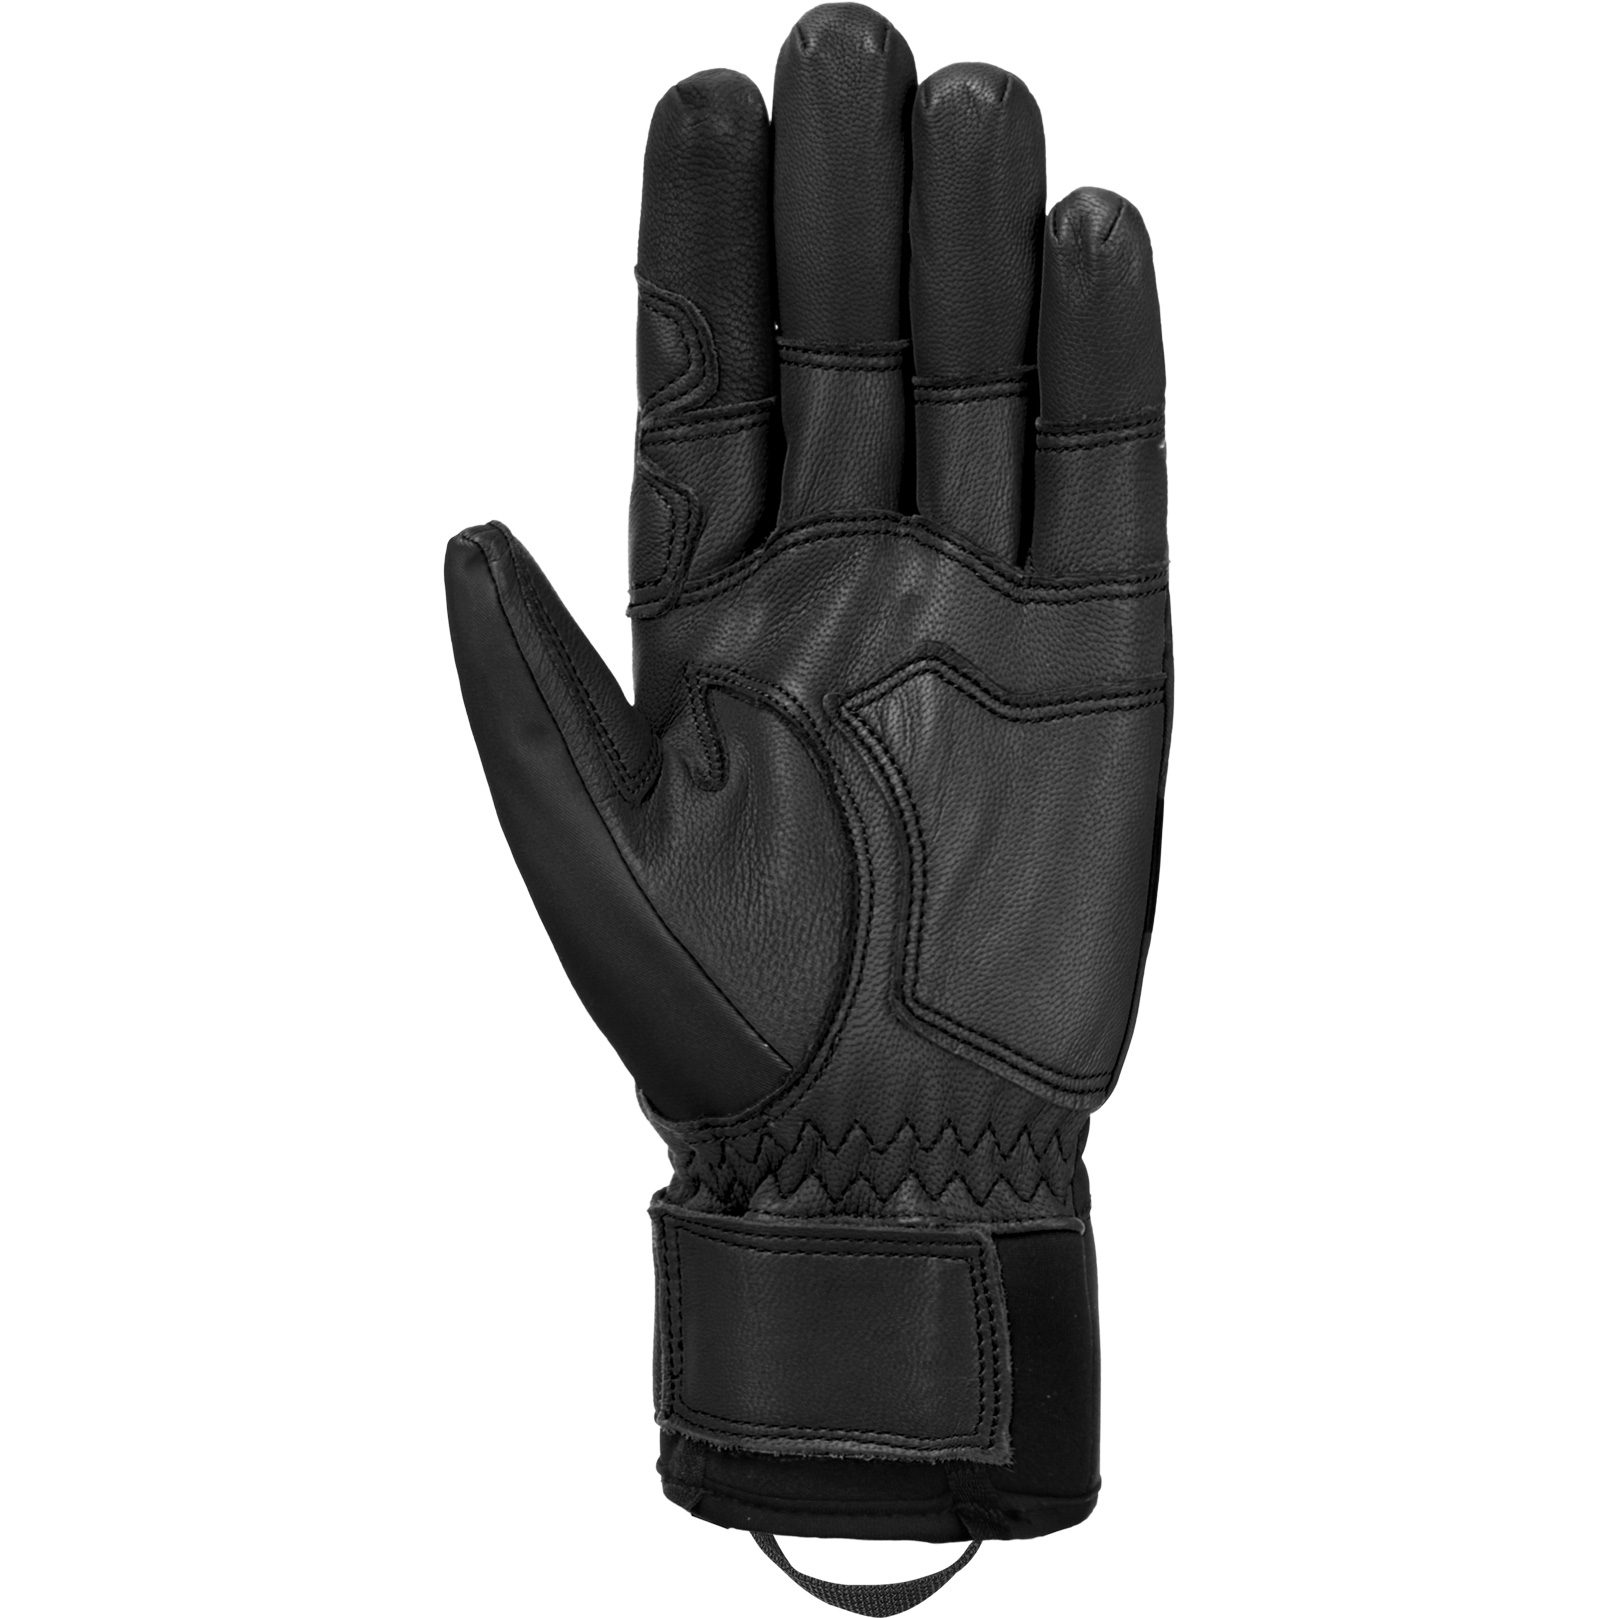 Reusch - Alp-X Touch-Tec™ Gloves black Sport Bittl at Shop